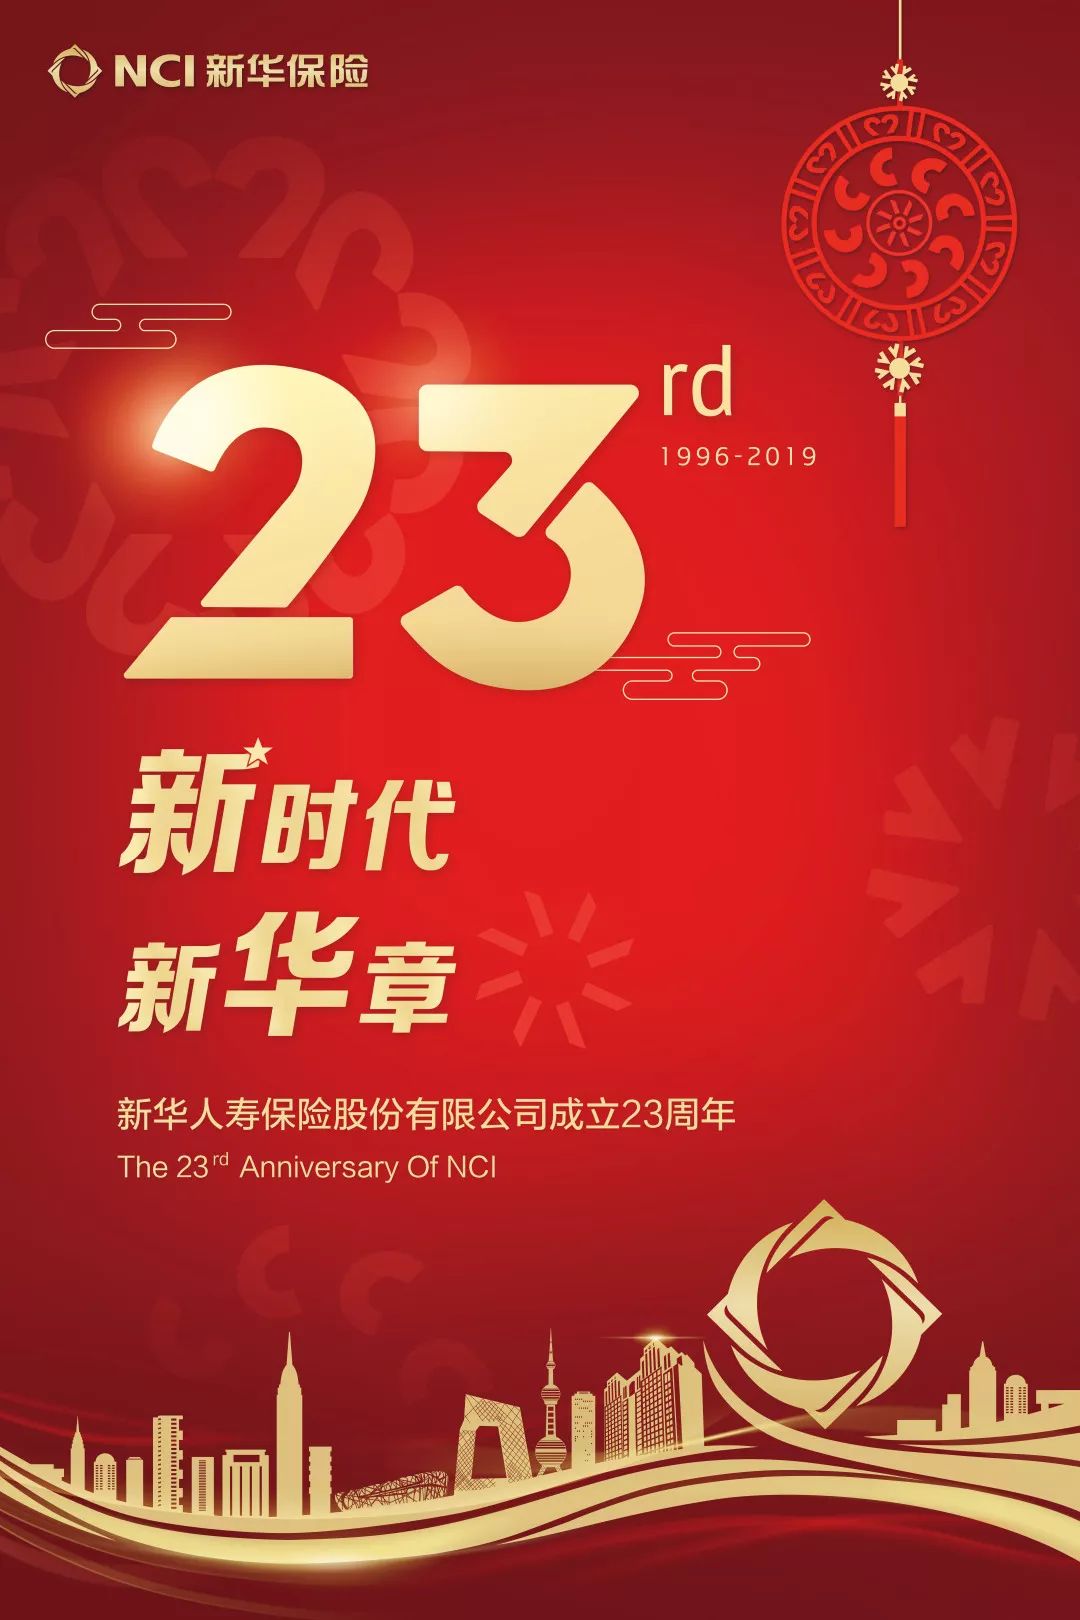 深圳分公司举办新华保险23周年司庆活动